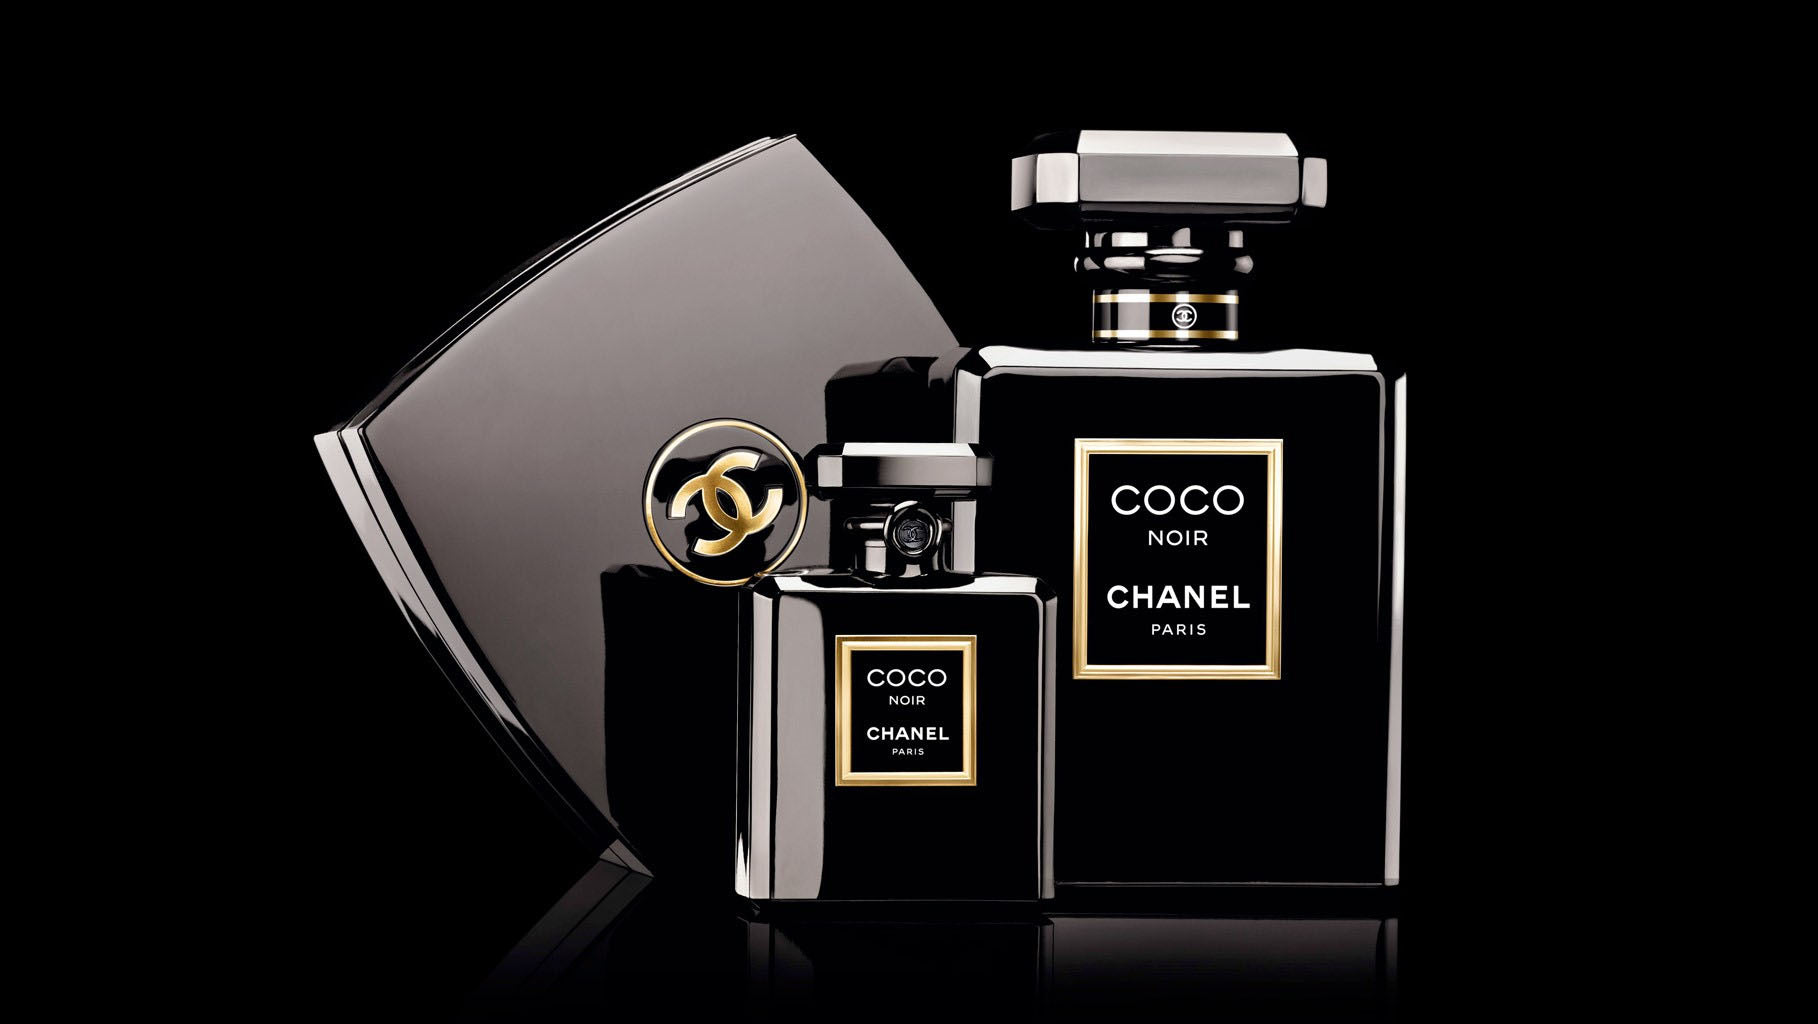 Chanel COCO NOIR